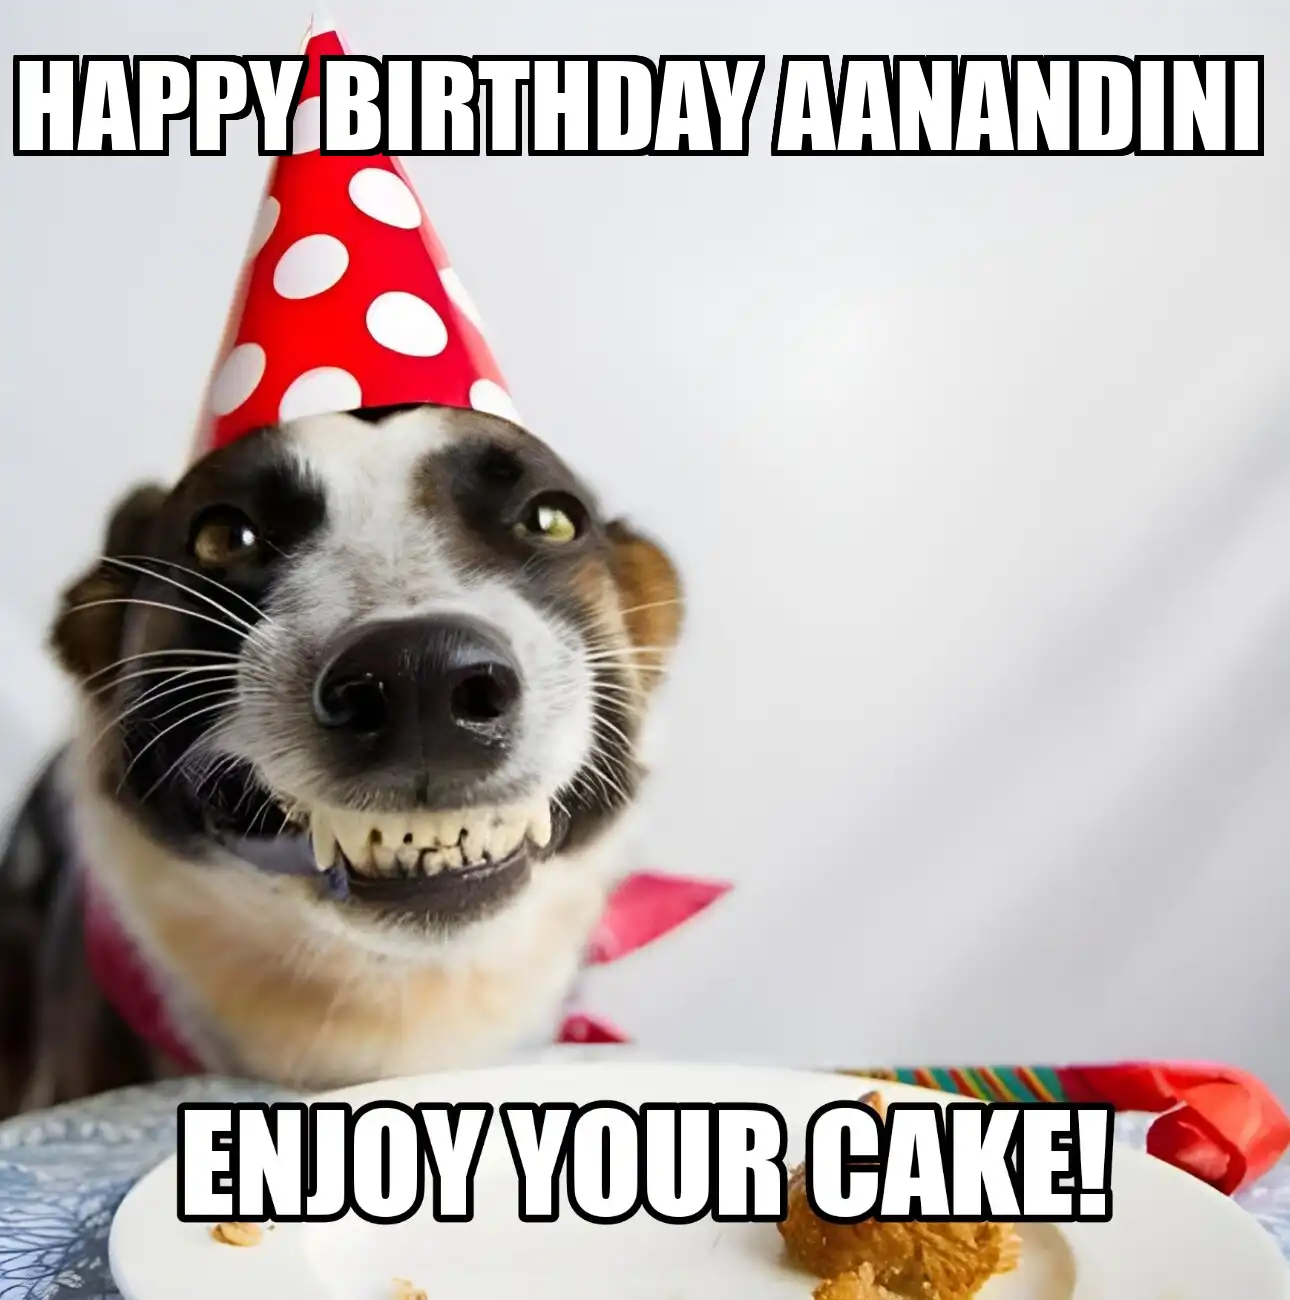 Happy Birthday Aanandini Enjoy Your Cake Dog Meme